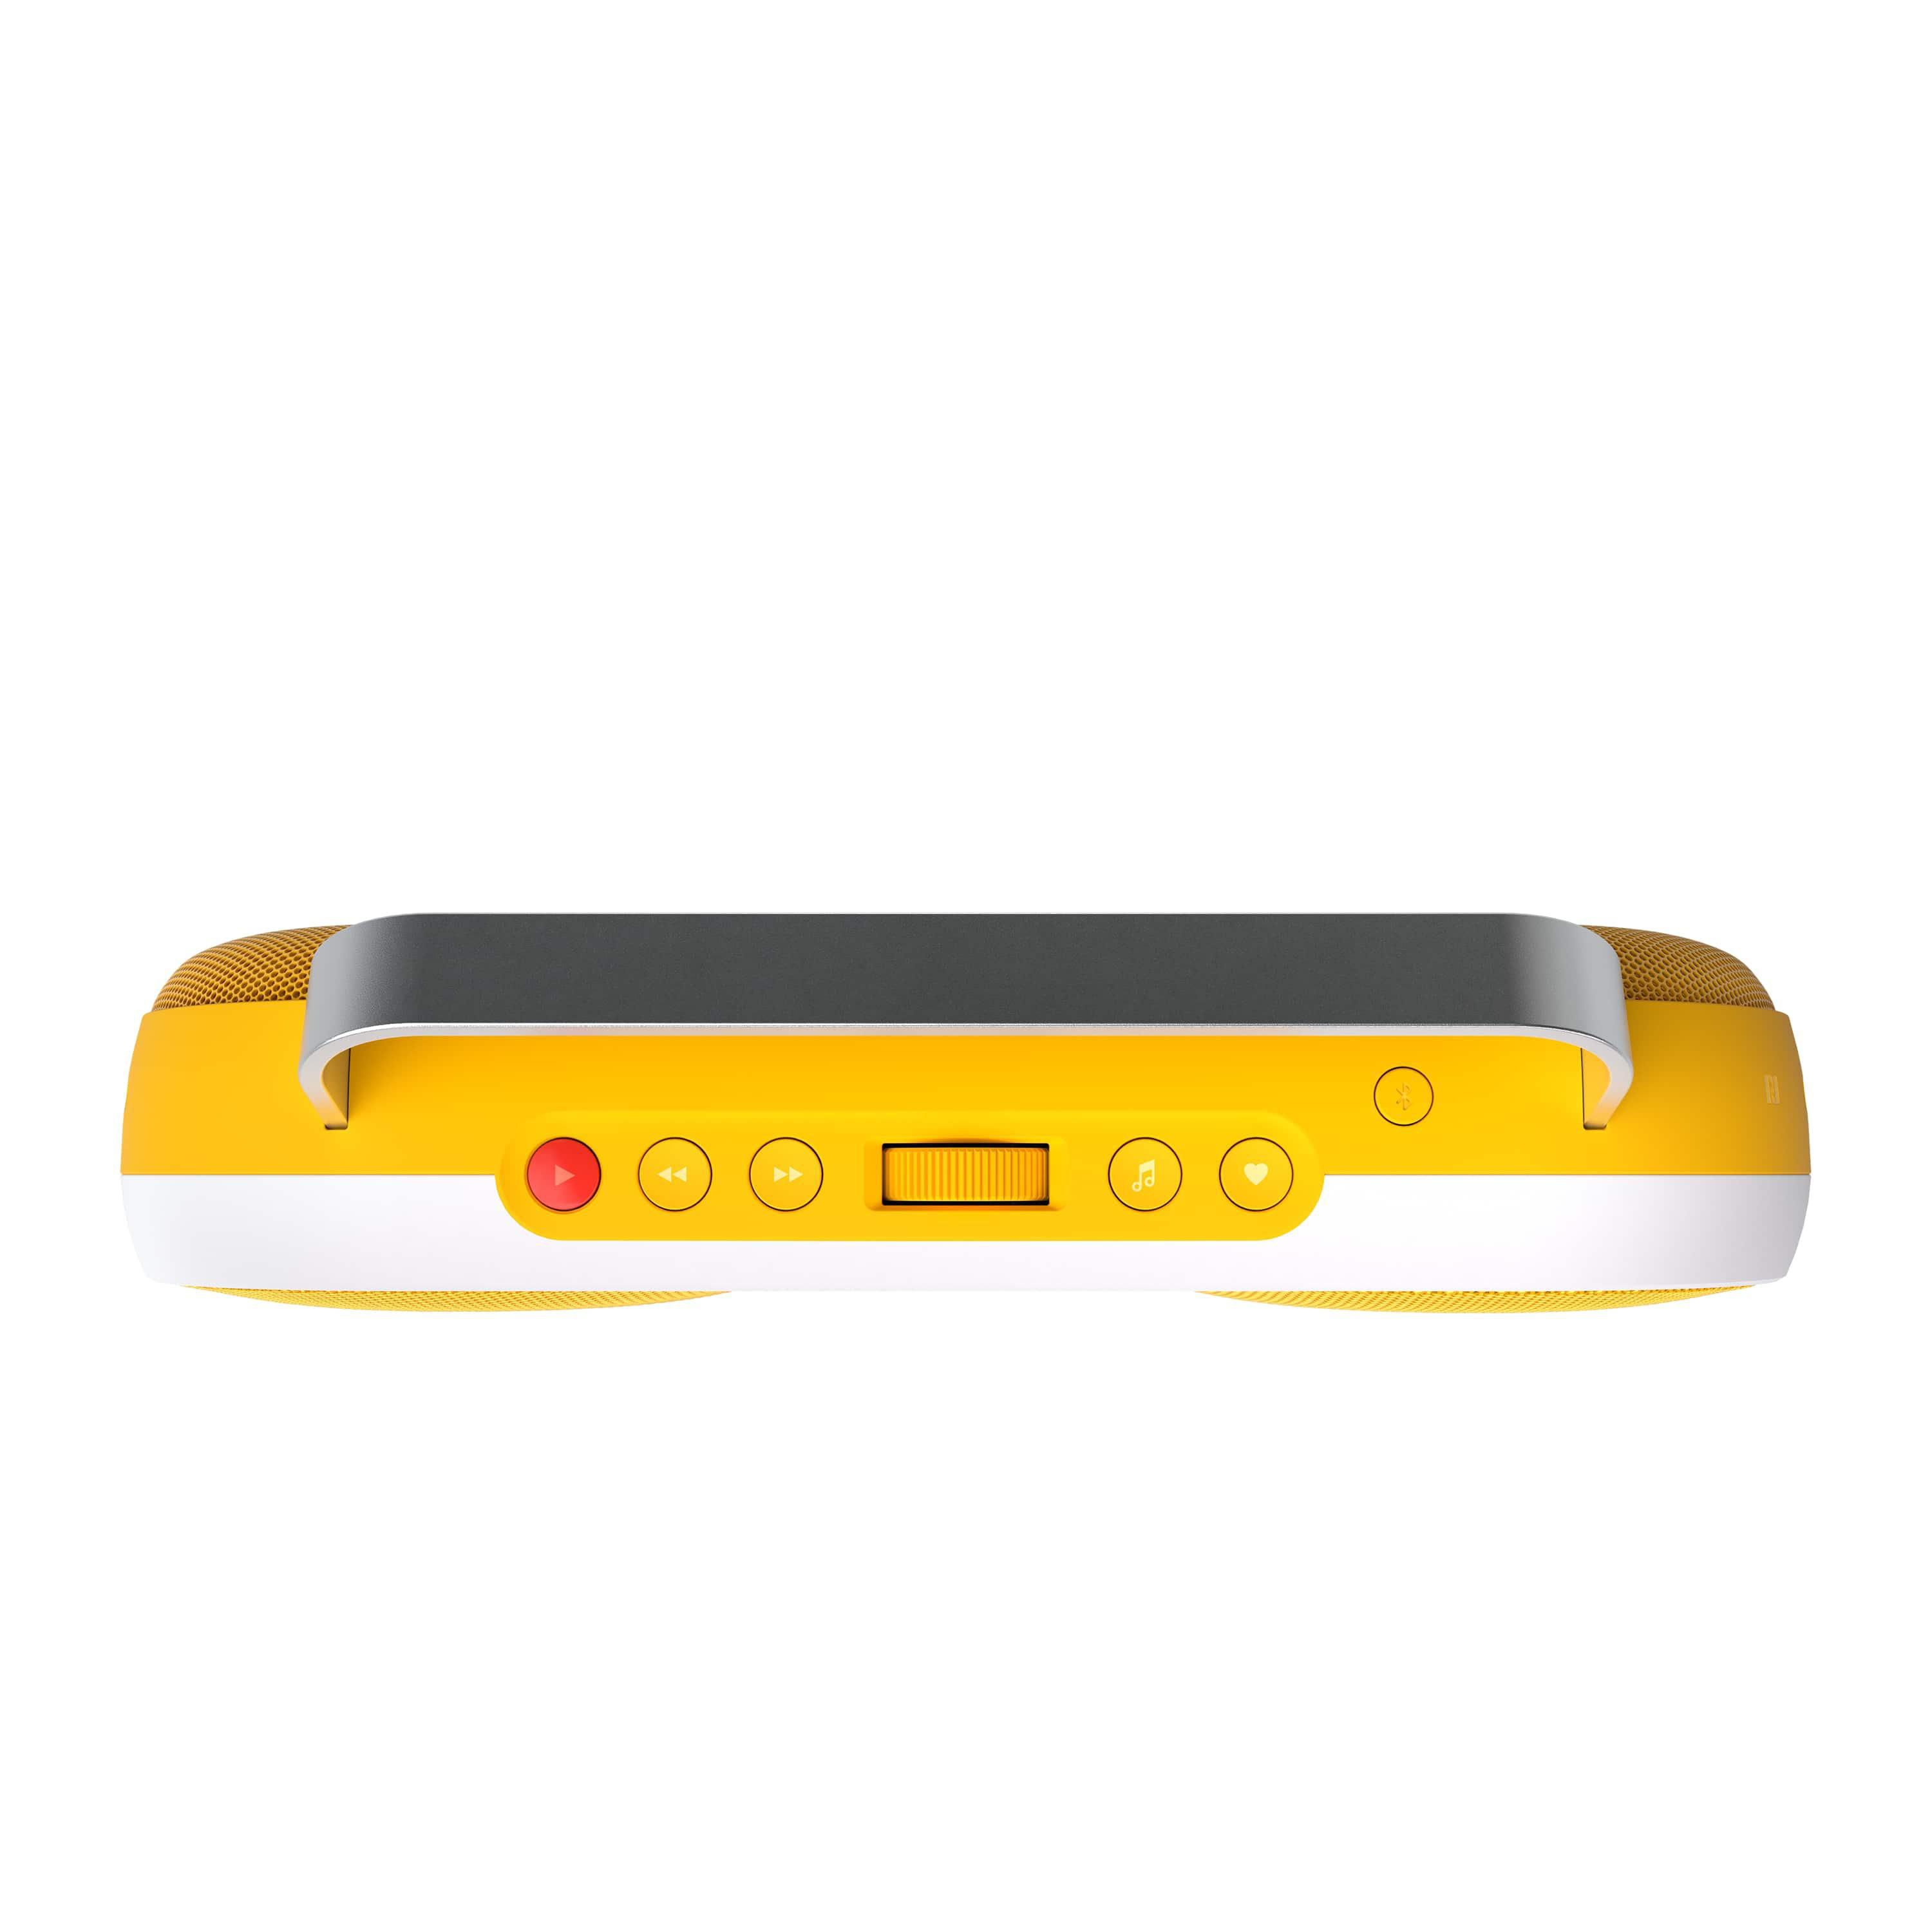 POLAROID P3 Lautsprecher Bluetooth , Gelb/Weiß Music Player